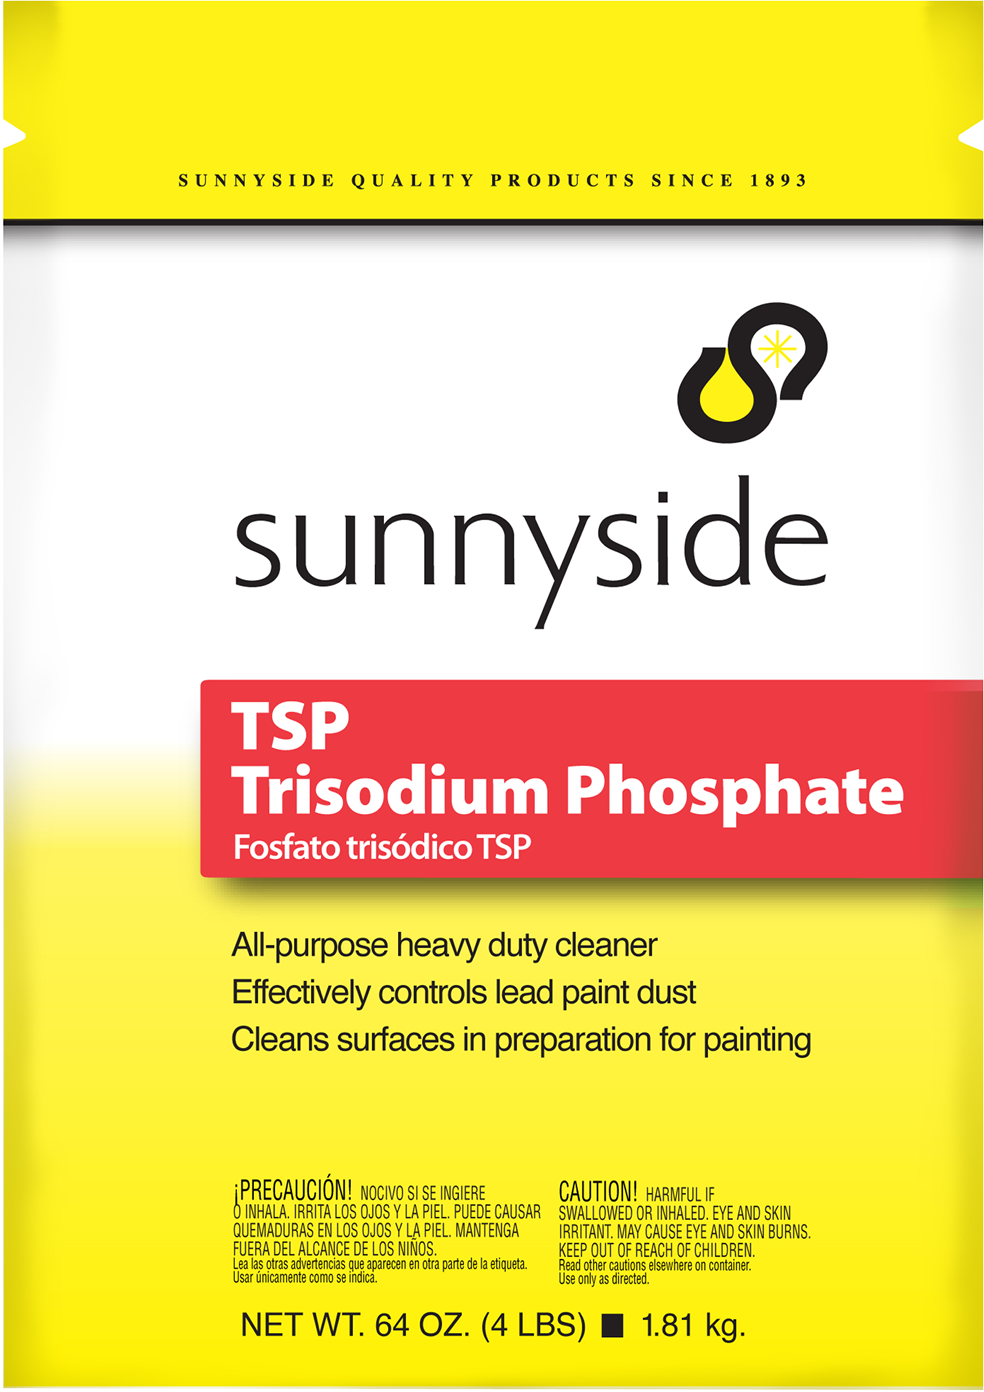 TSP - TRISODIUM PHOSPHATE Product Image